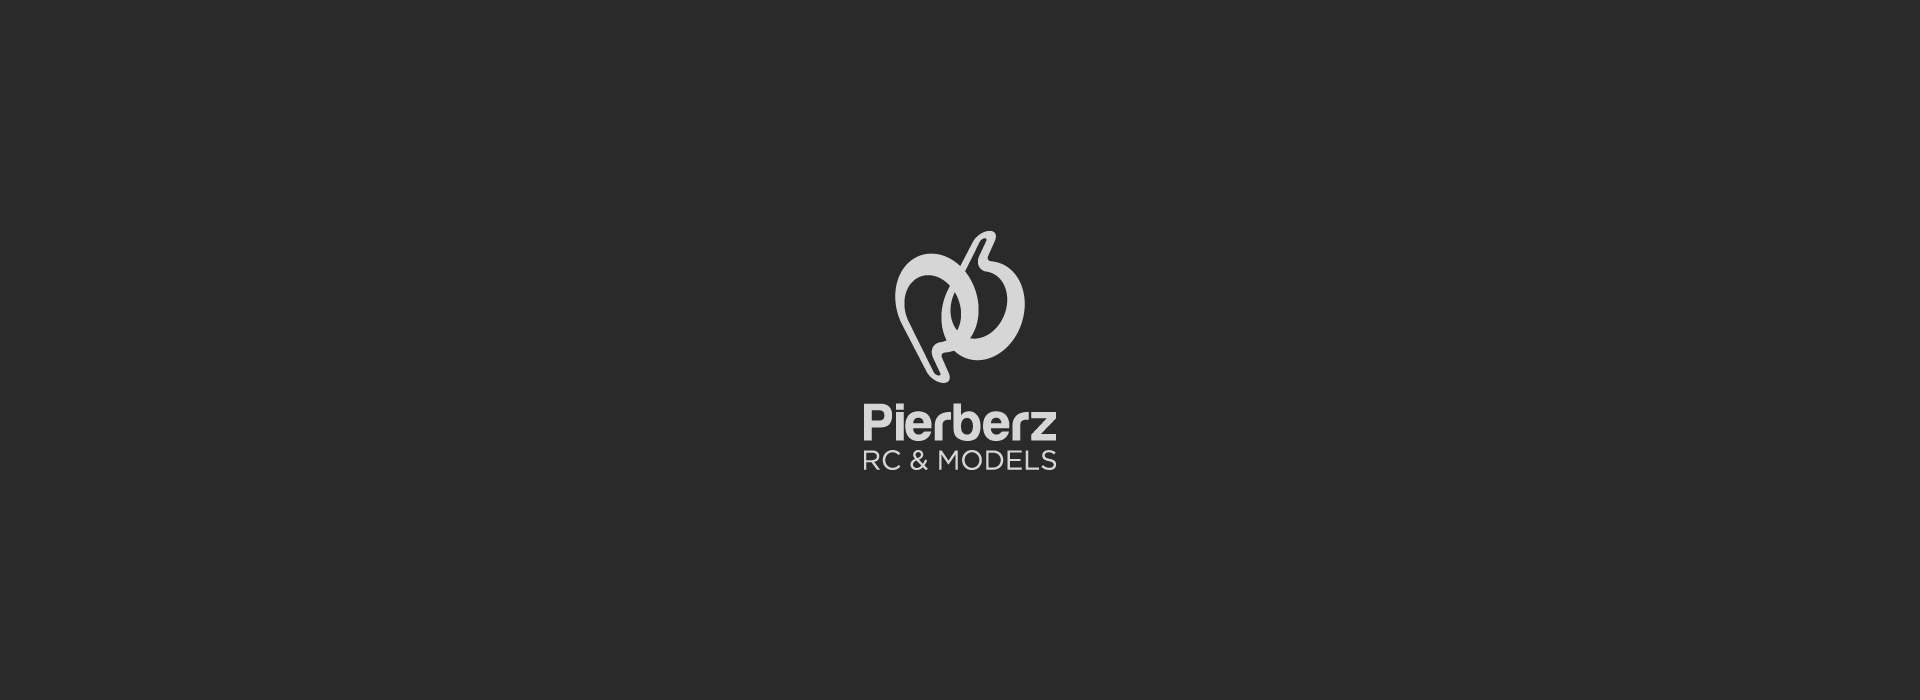 Pierberz